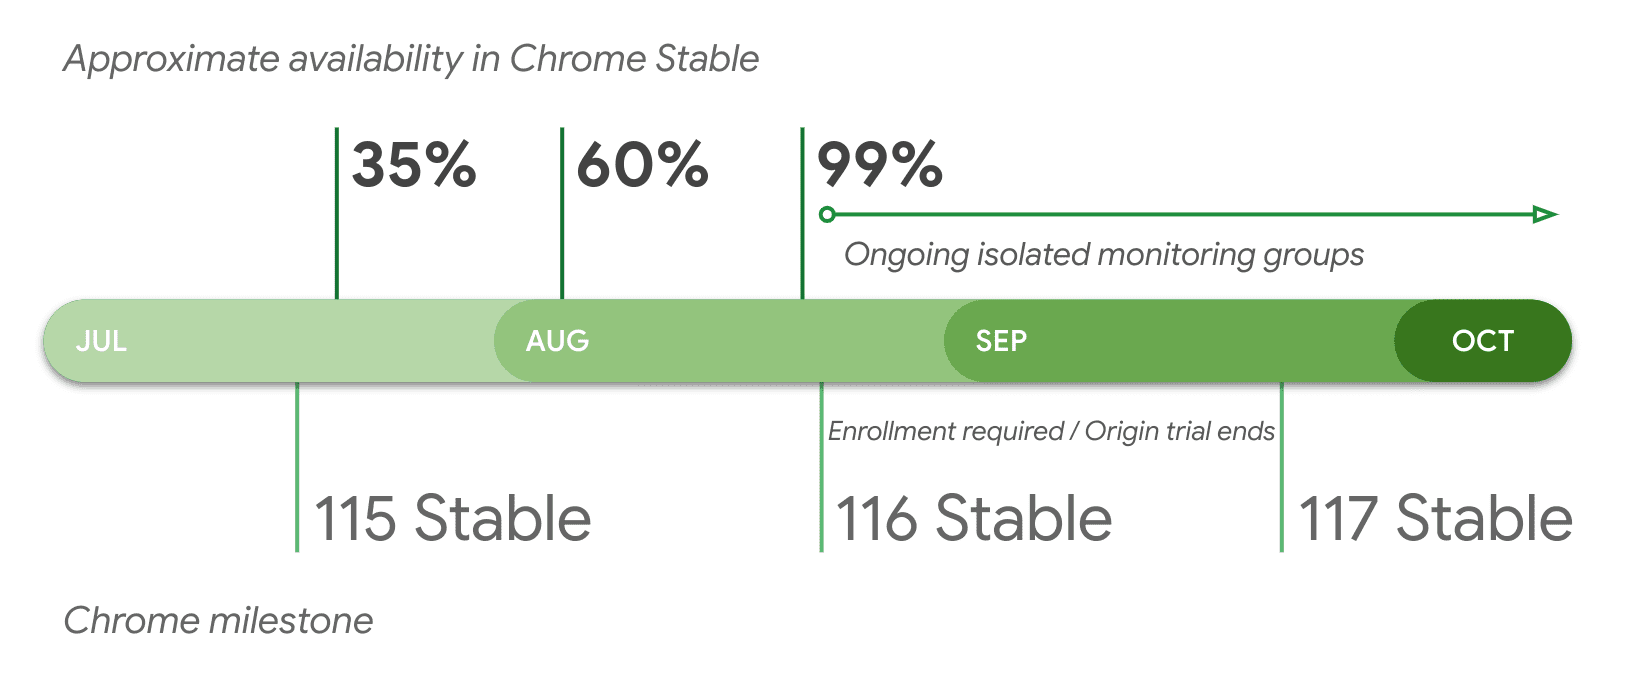 Disponibilidade aproximada no Chrome Stable por versão.